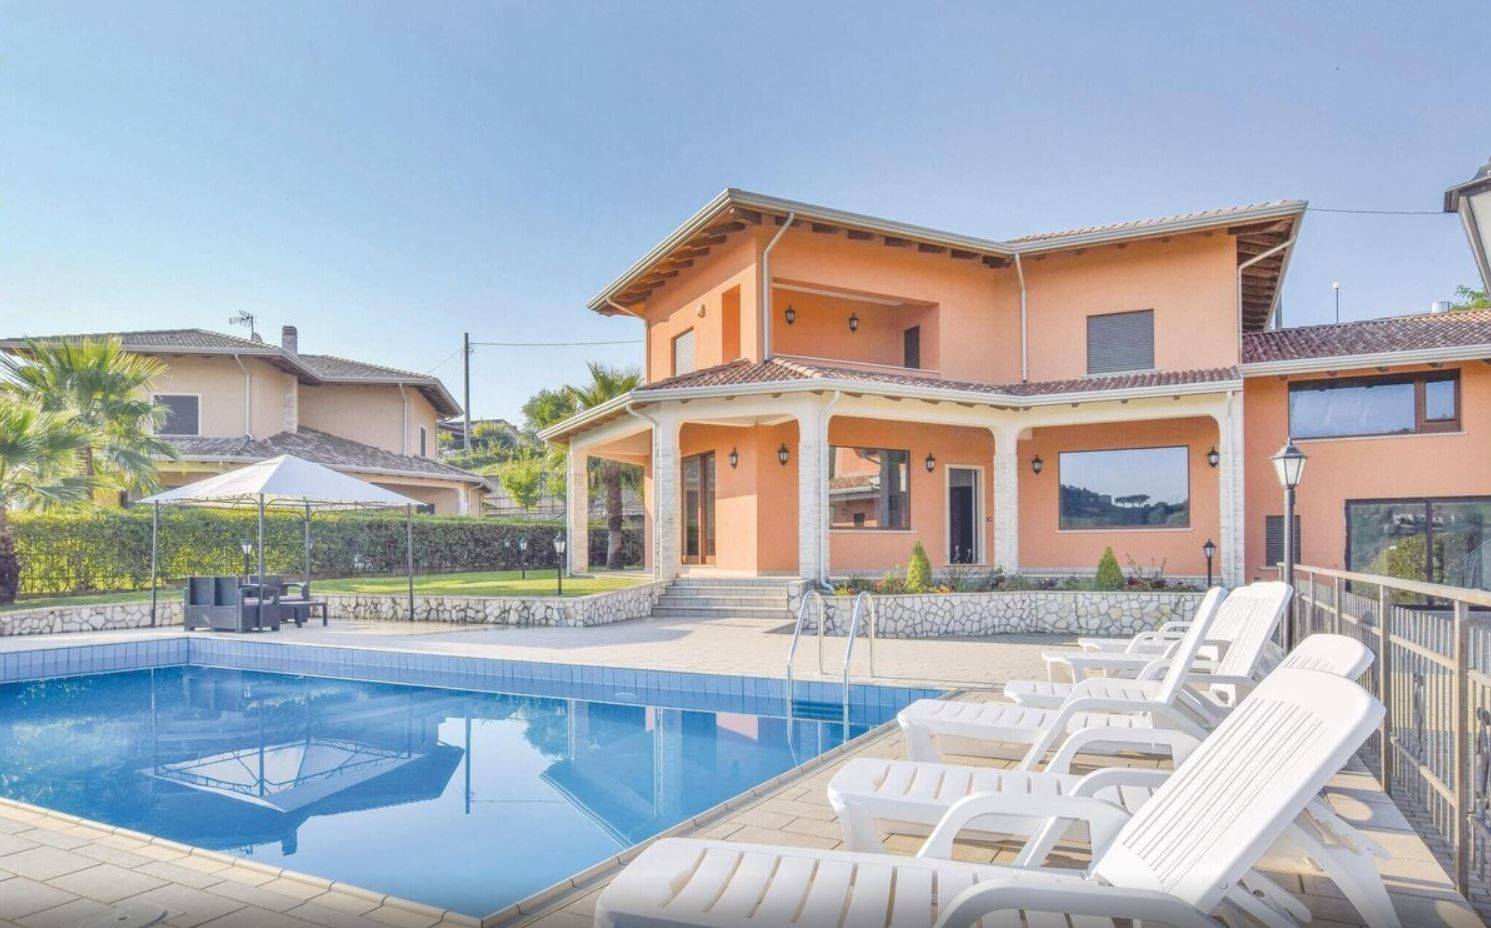 Villa in vendita a Rende, 9 locali, zona Località: MALVITANI, prezzo € 480.000 | PortaleAgenzieImmobiliari.it